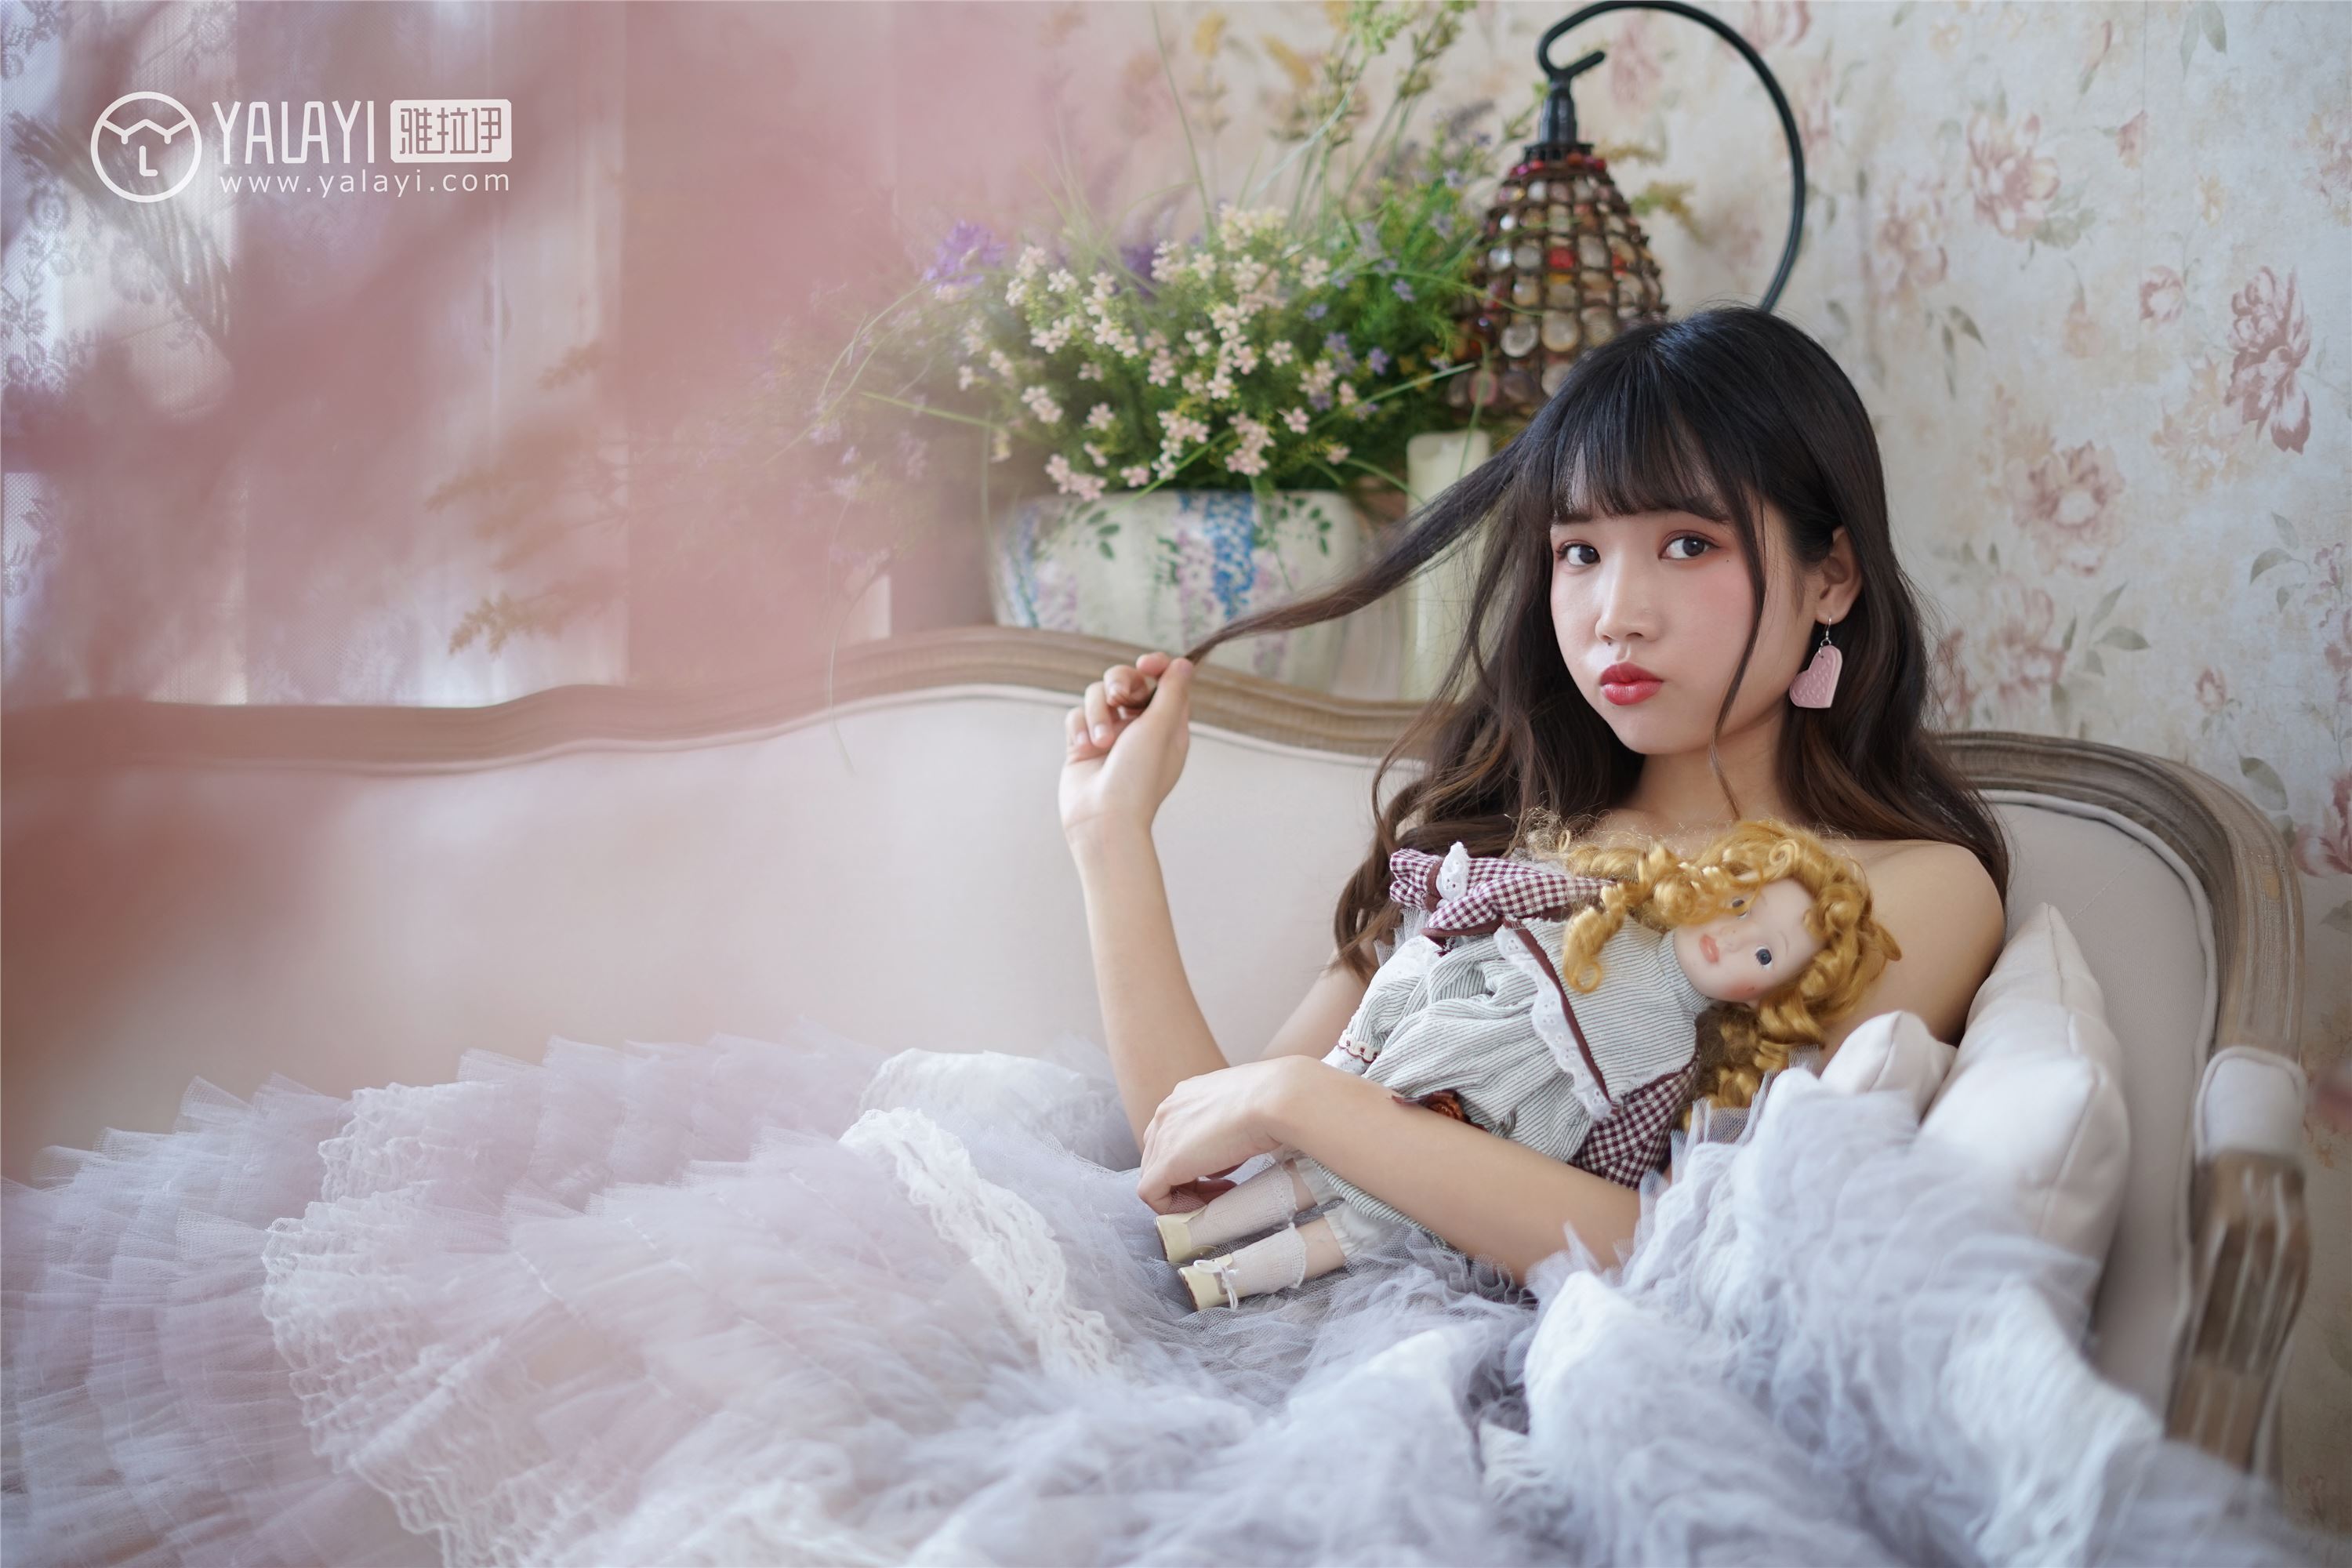 [yalayi yalayi] 2018.06.01 no.003 princess's tulle skirt Princess rabbit